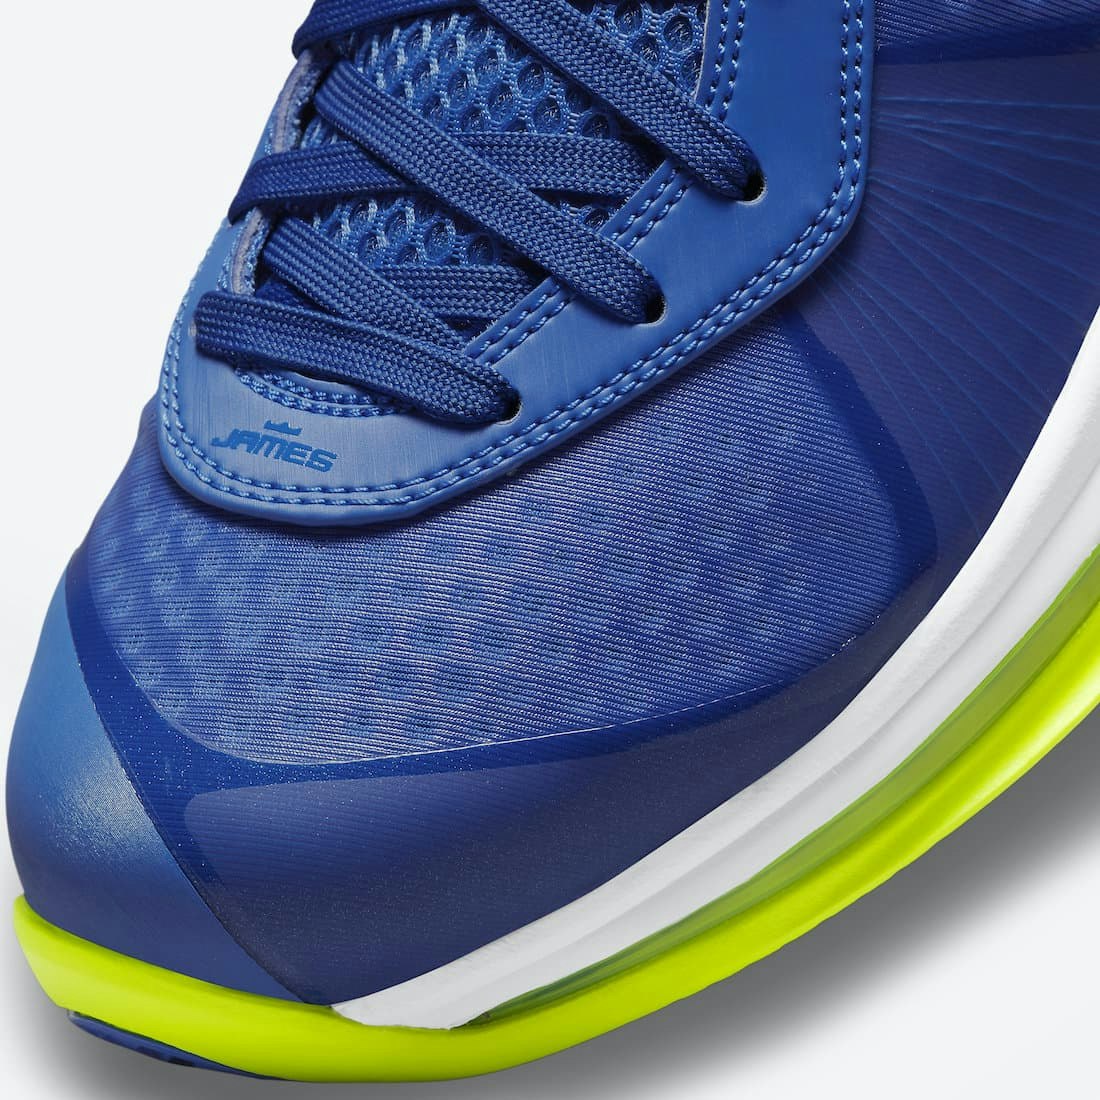 Nike LeBron 8 V2 Low “Sprite”